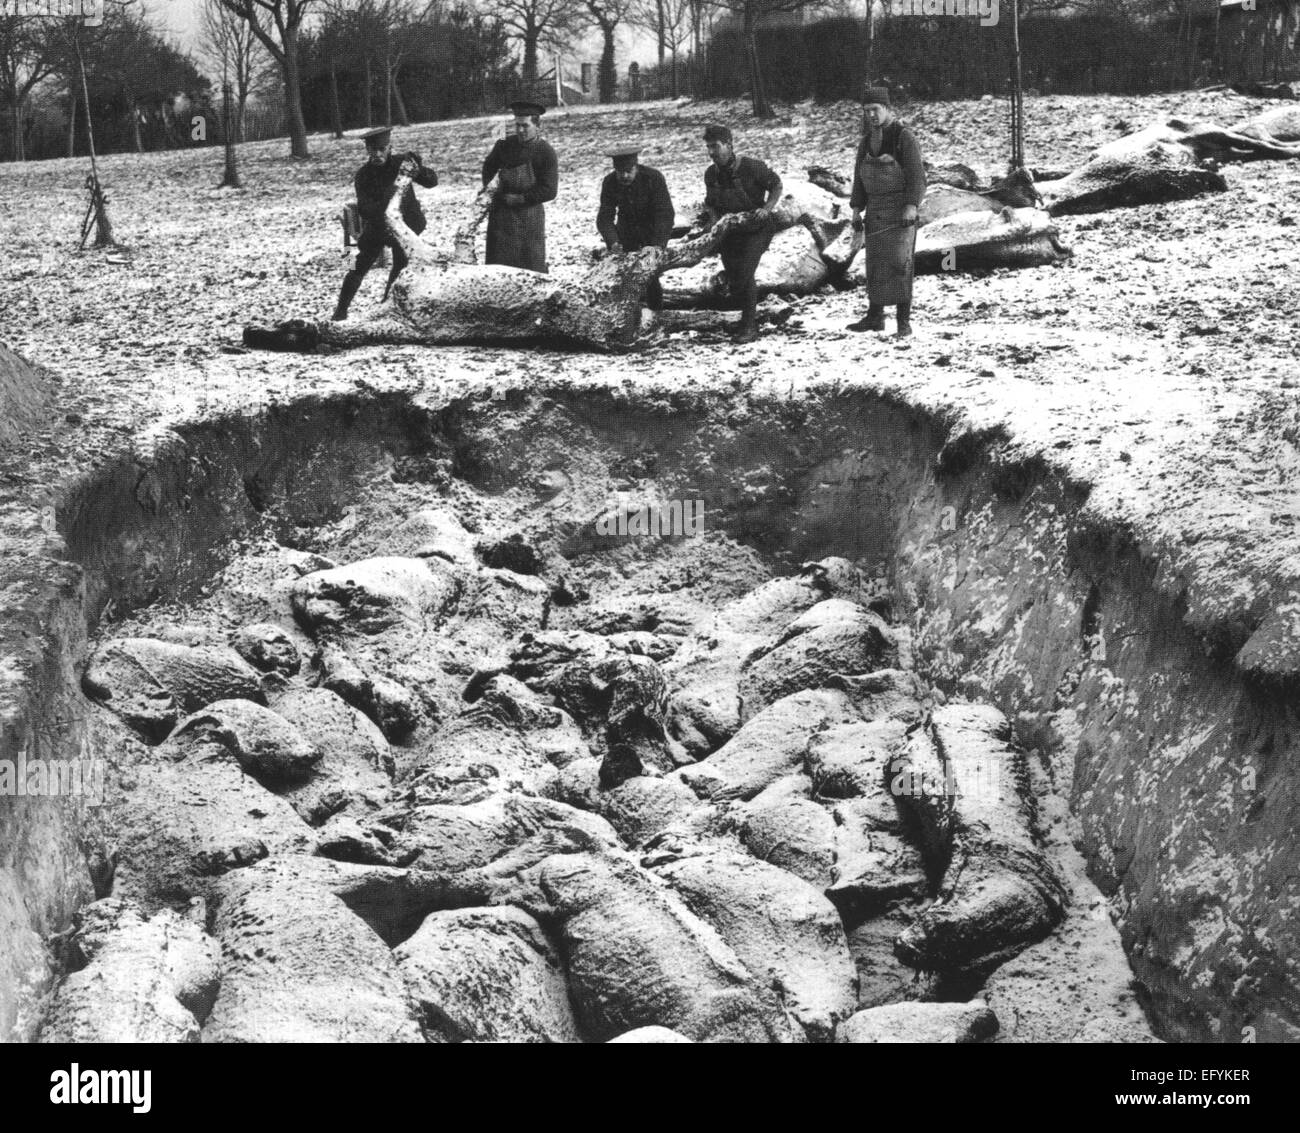 ERSTEN Weltkrieg Masse Beerdigung von Pferden im Winter 1916 von britischen Soldaten. Lage unbekannt. Britischer Offizieller Foto Stockfoto